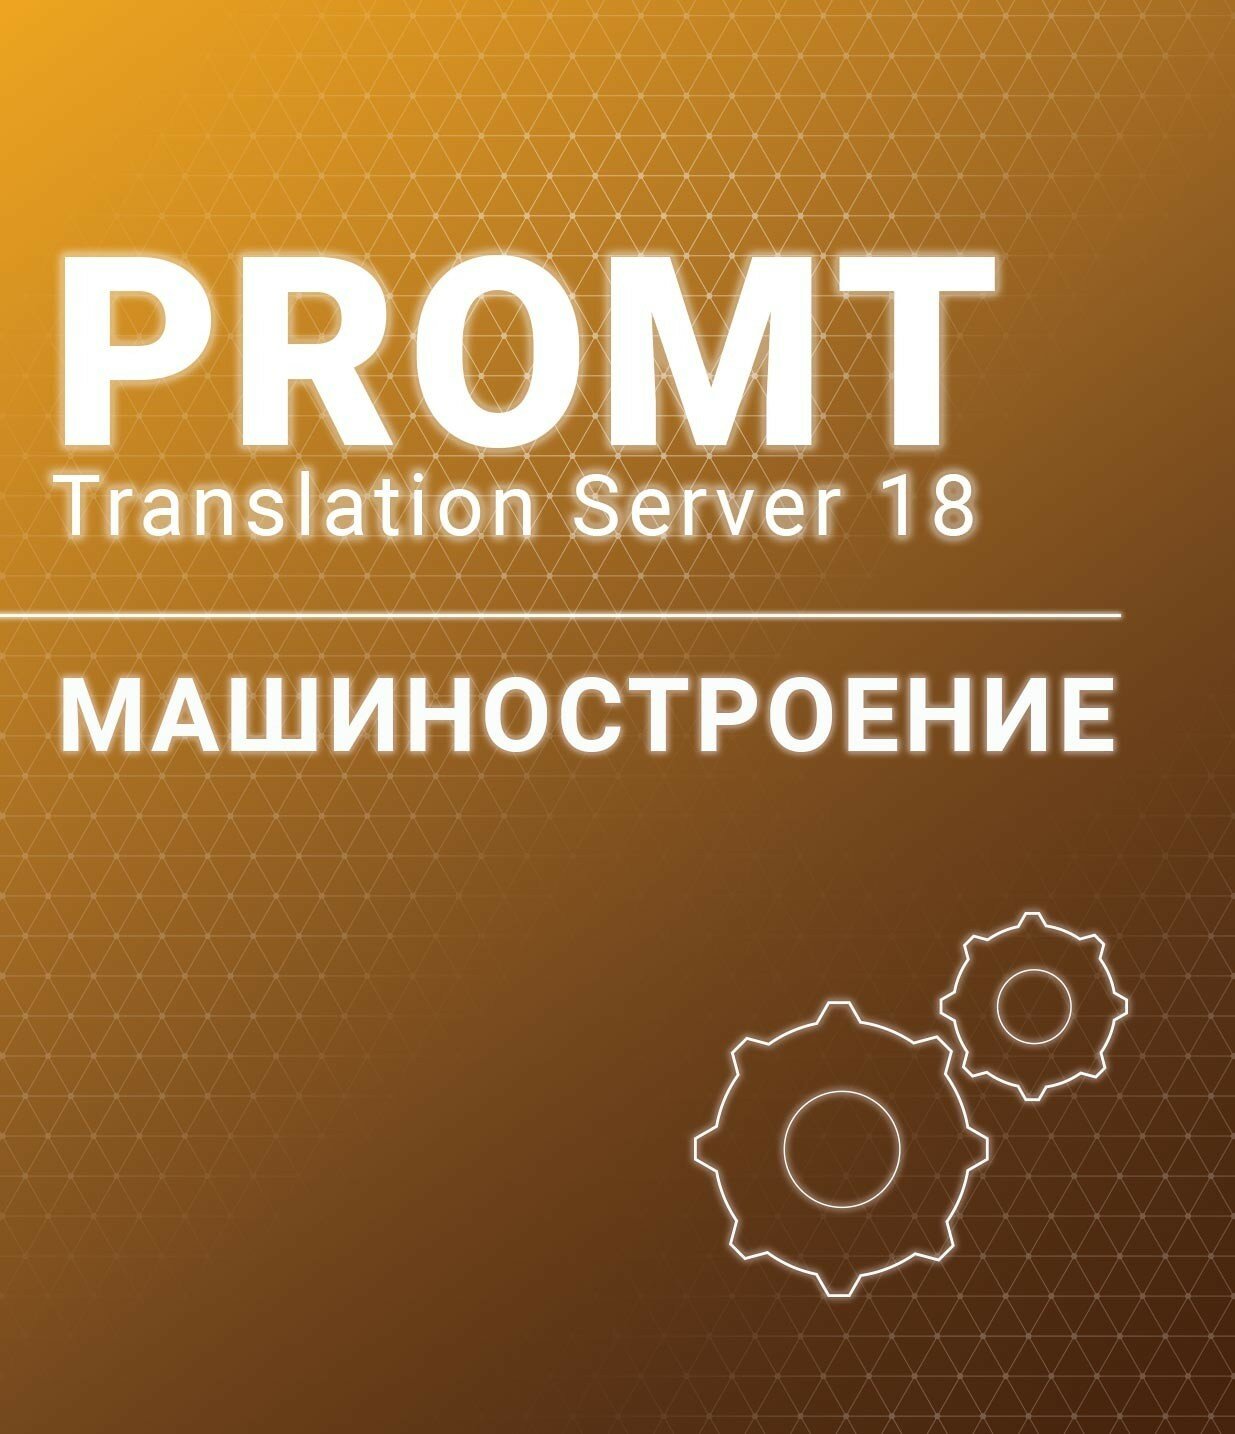 PROMT Professional 20 Многоязычный, Машиностроение